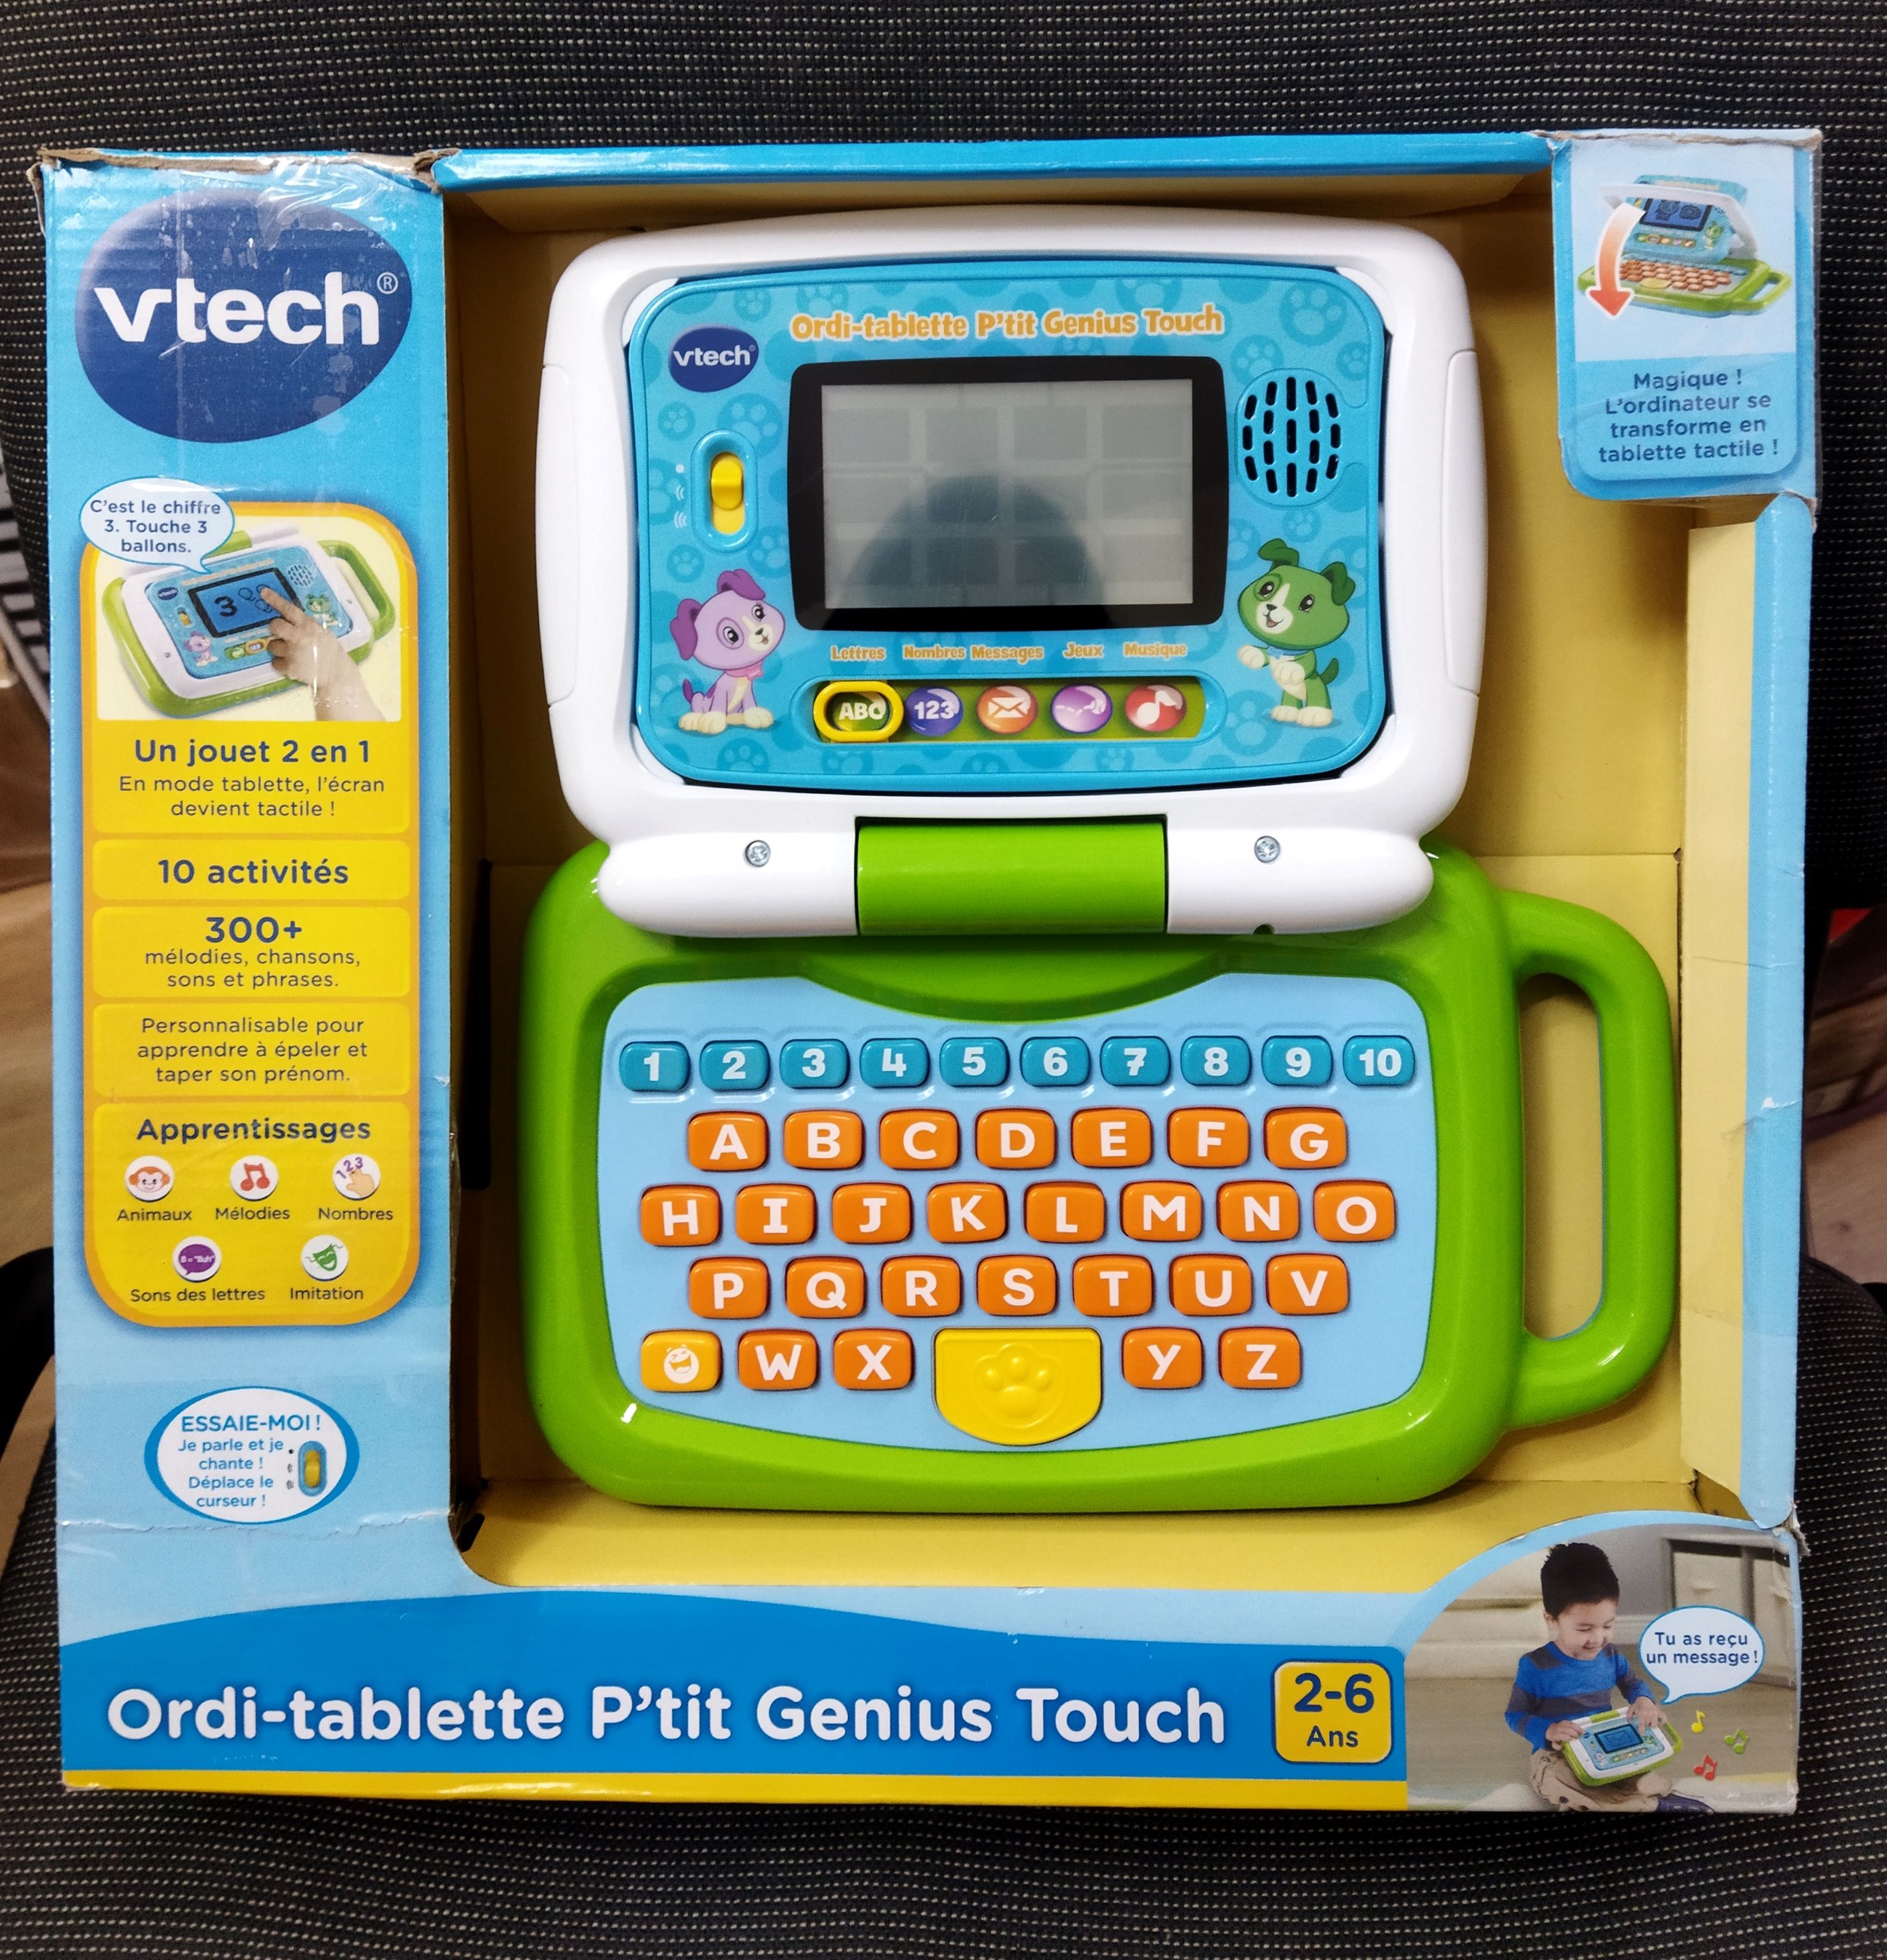 Детски образователен таблет VTech Ordi-P'tit Genius Touch, френска ве